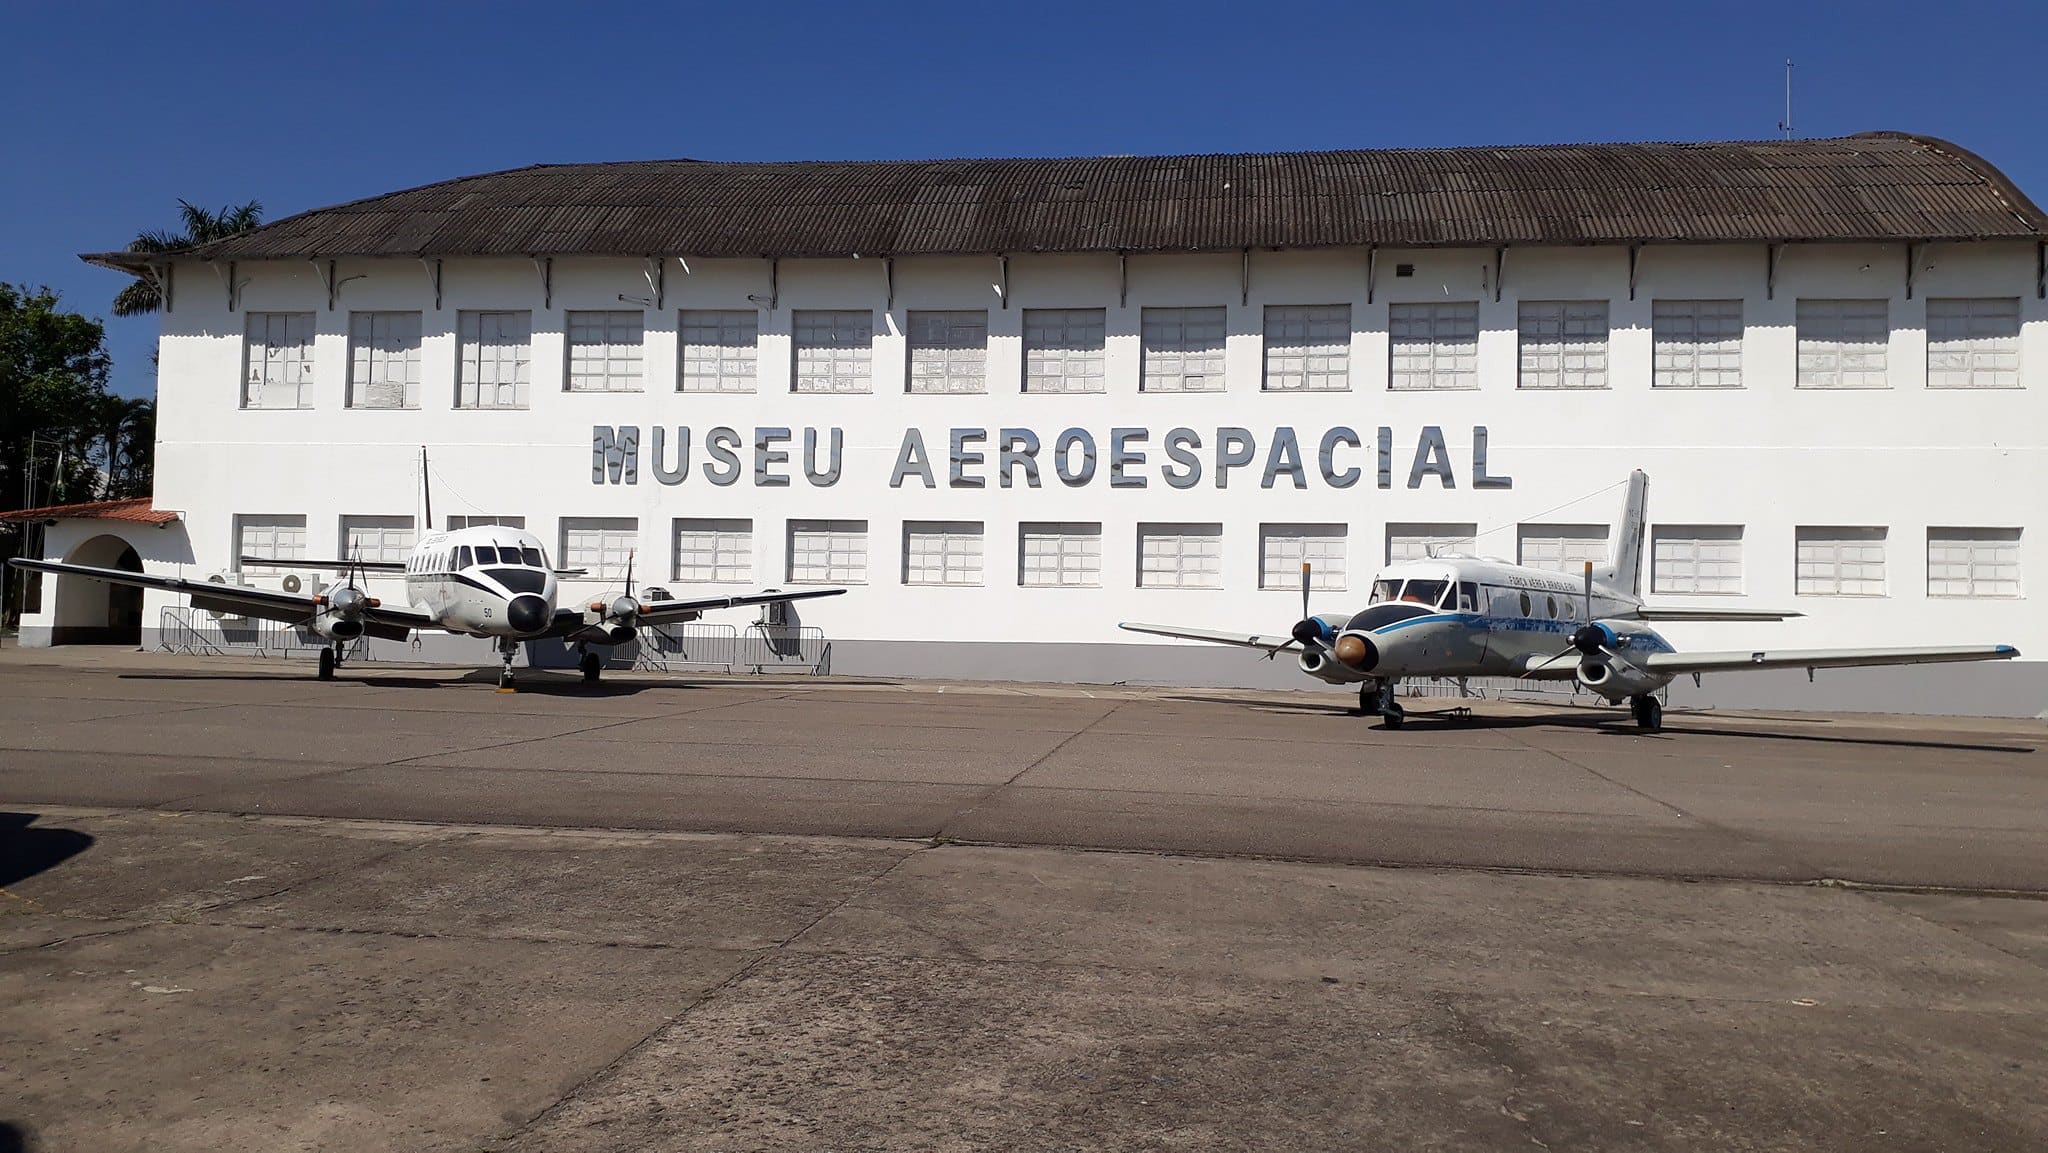 Domingo tem Rolé Carioca com visita guiada no Museu Aeroespacial - Diário do Rio de Janeiro